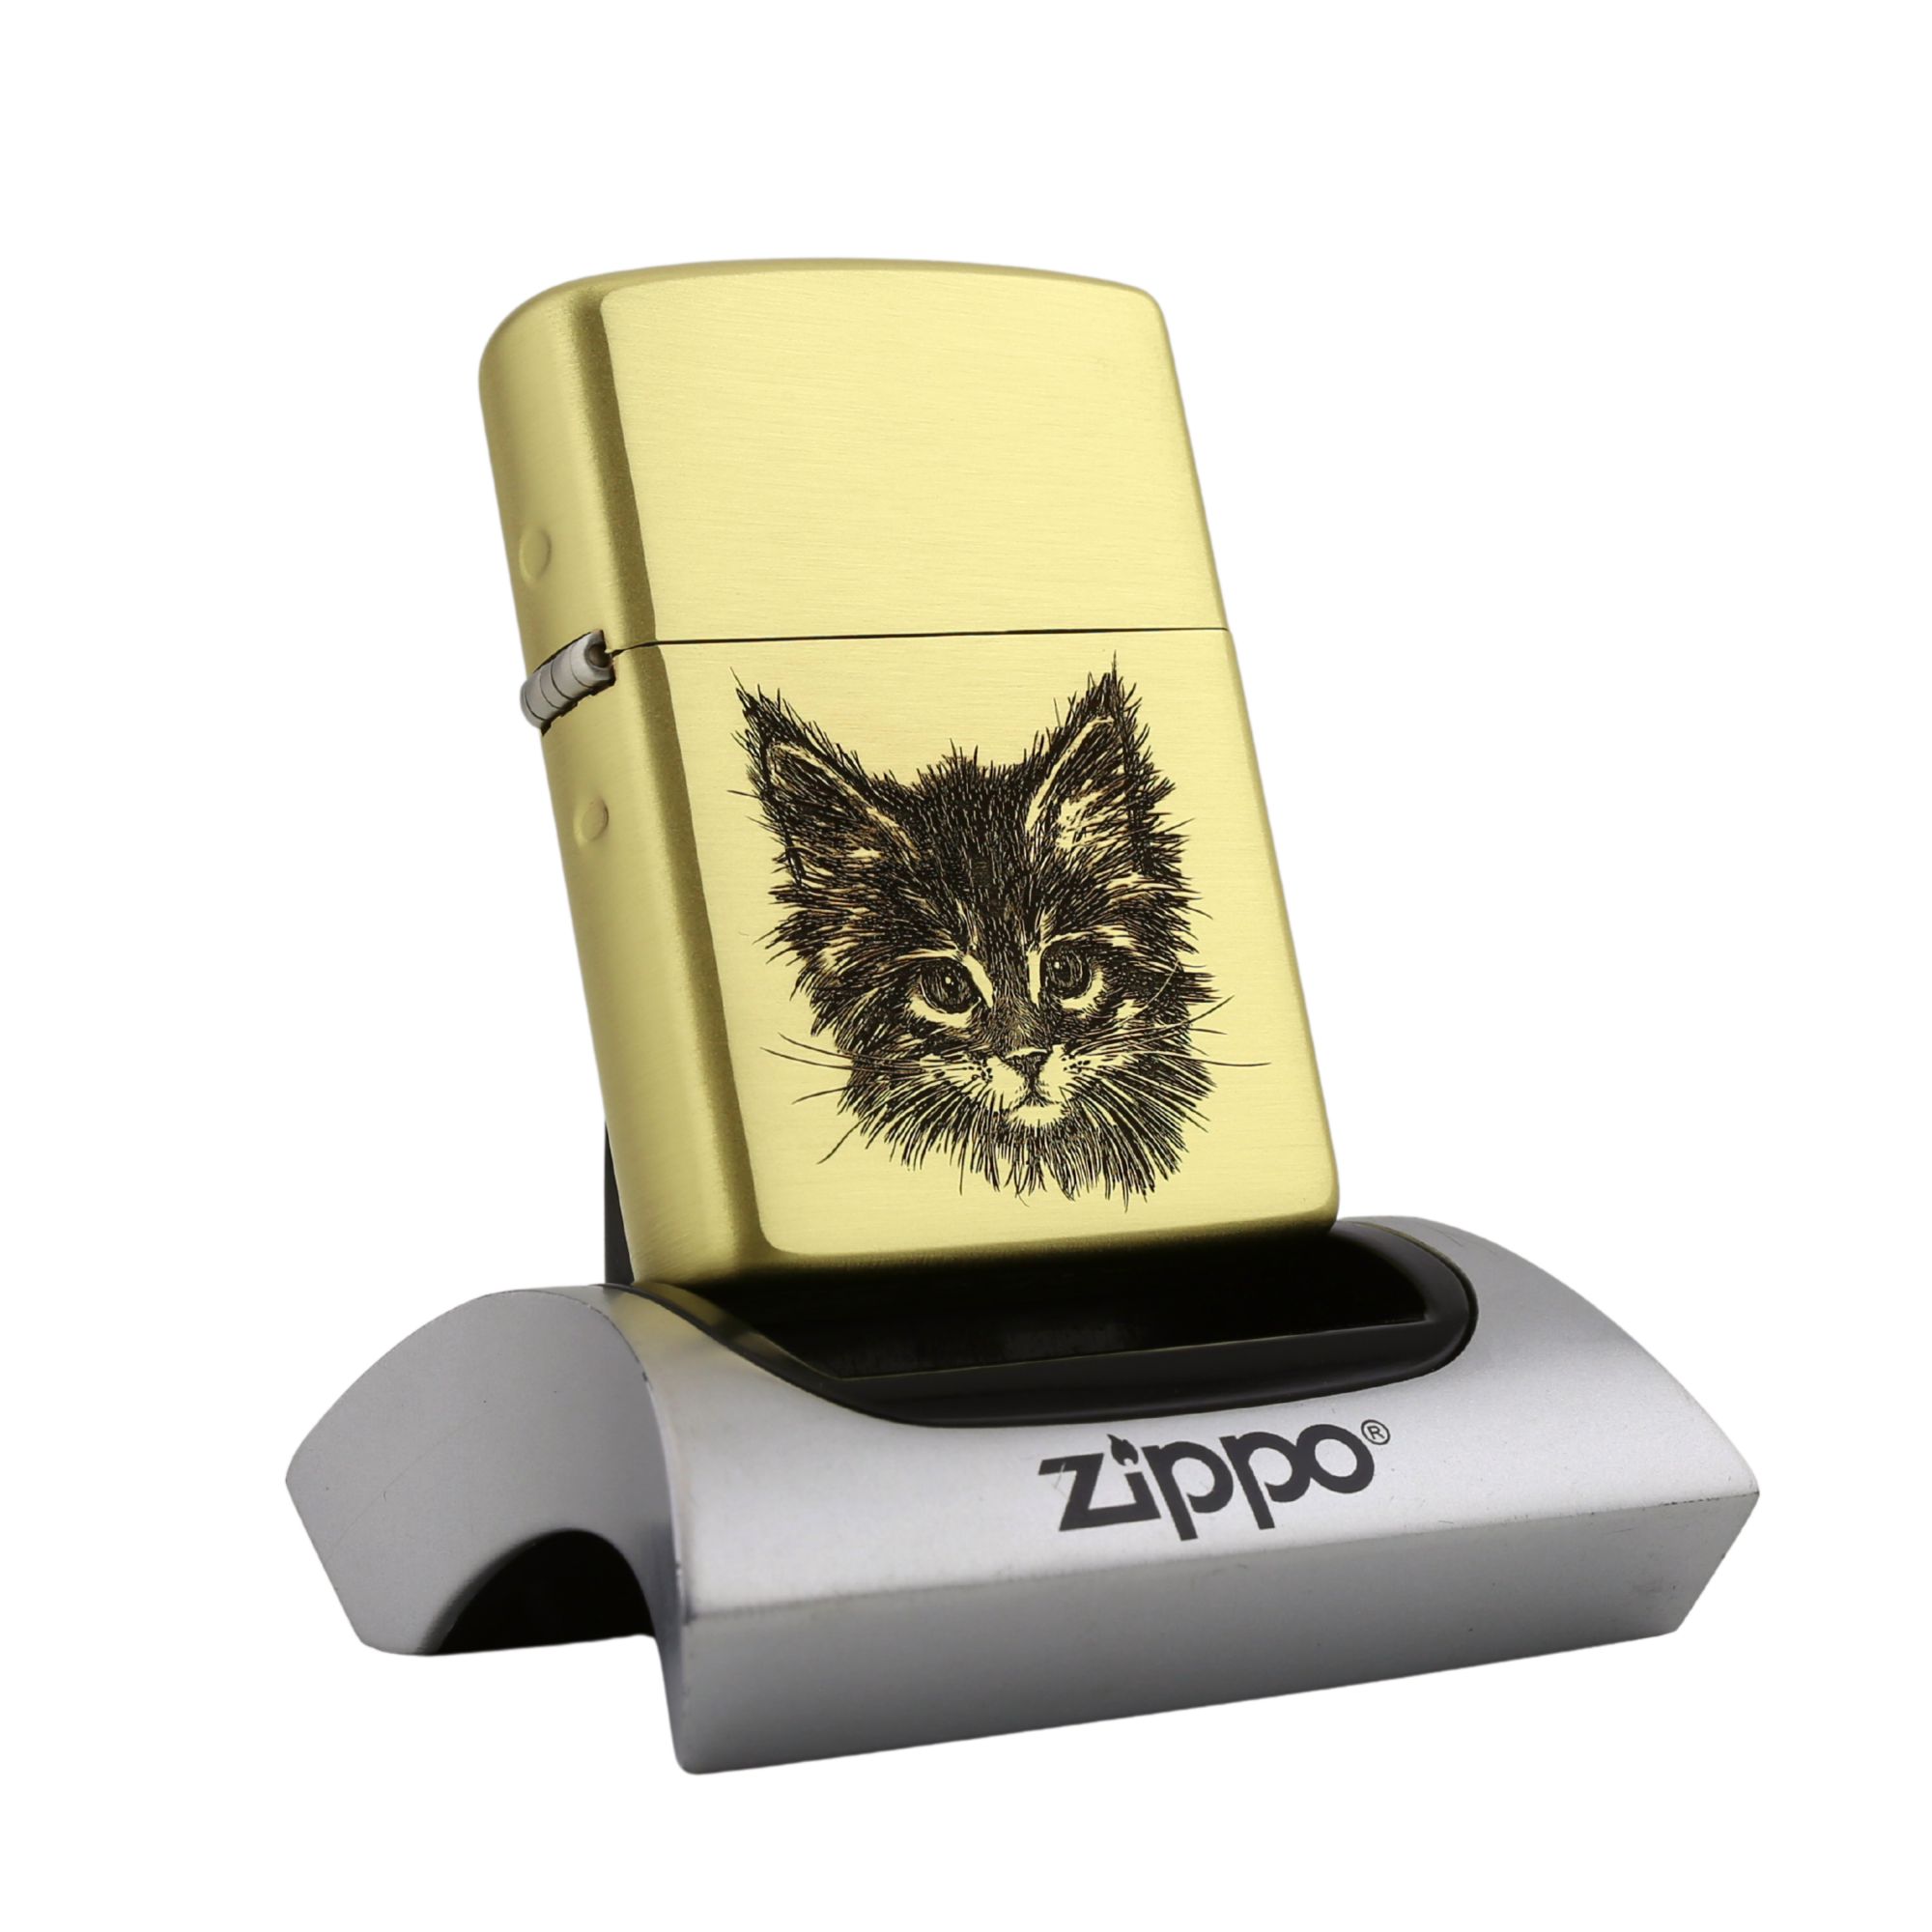 Zippo-cat-meo-con-tieu-miu-moew-dong-nguyen-khoi-vo-day-cua-hang-zippo-khac-uy-tin